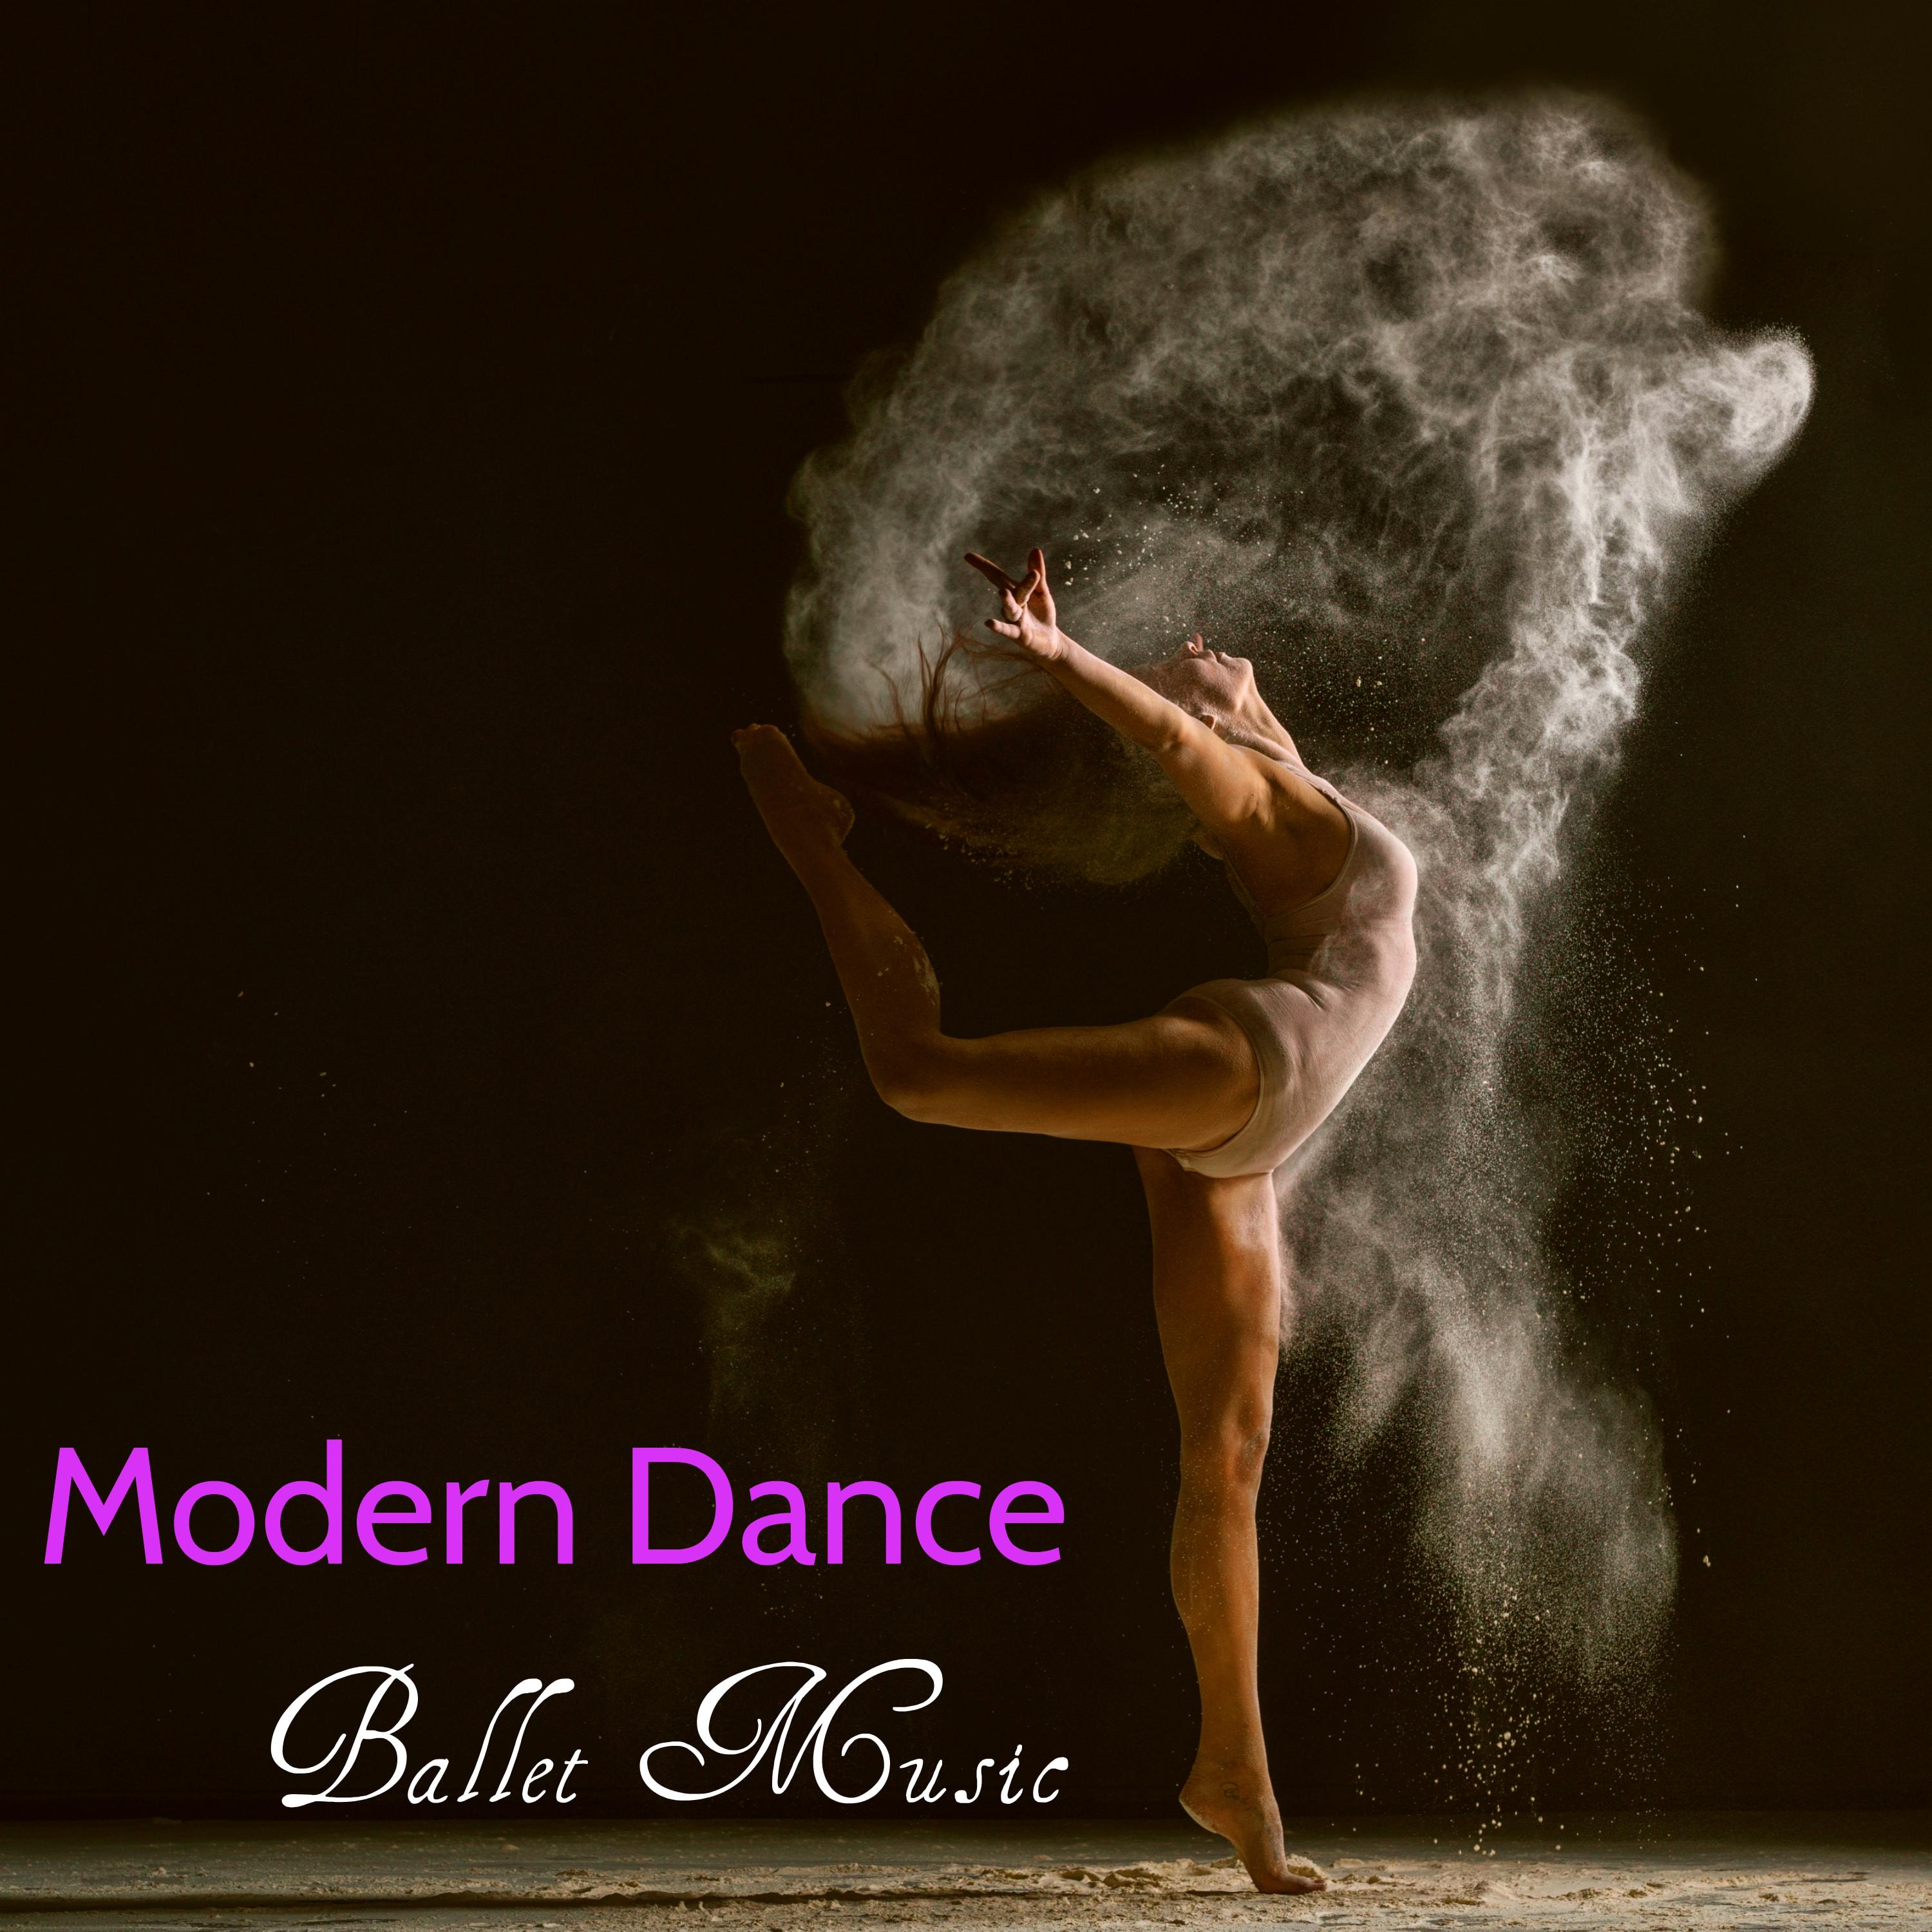 La Vie Est Belle - Sweet and Sad Music for Ballet